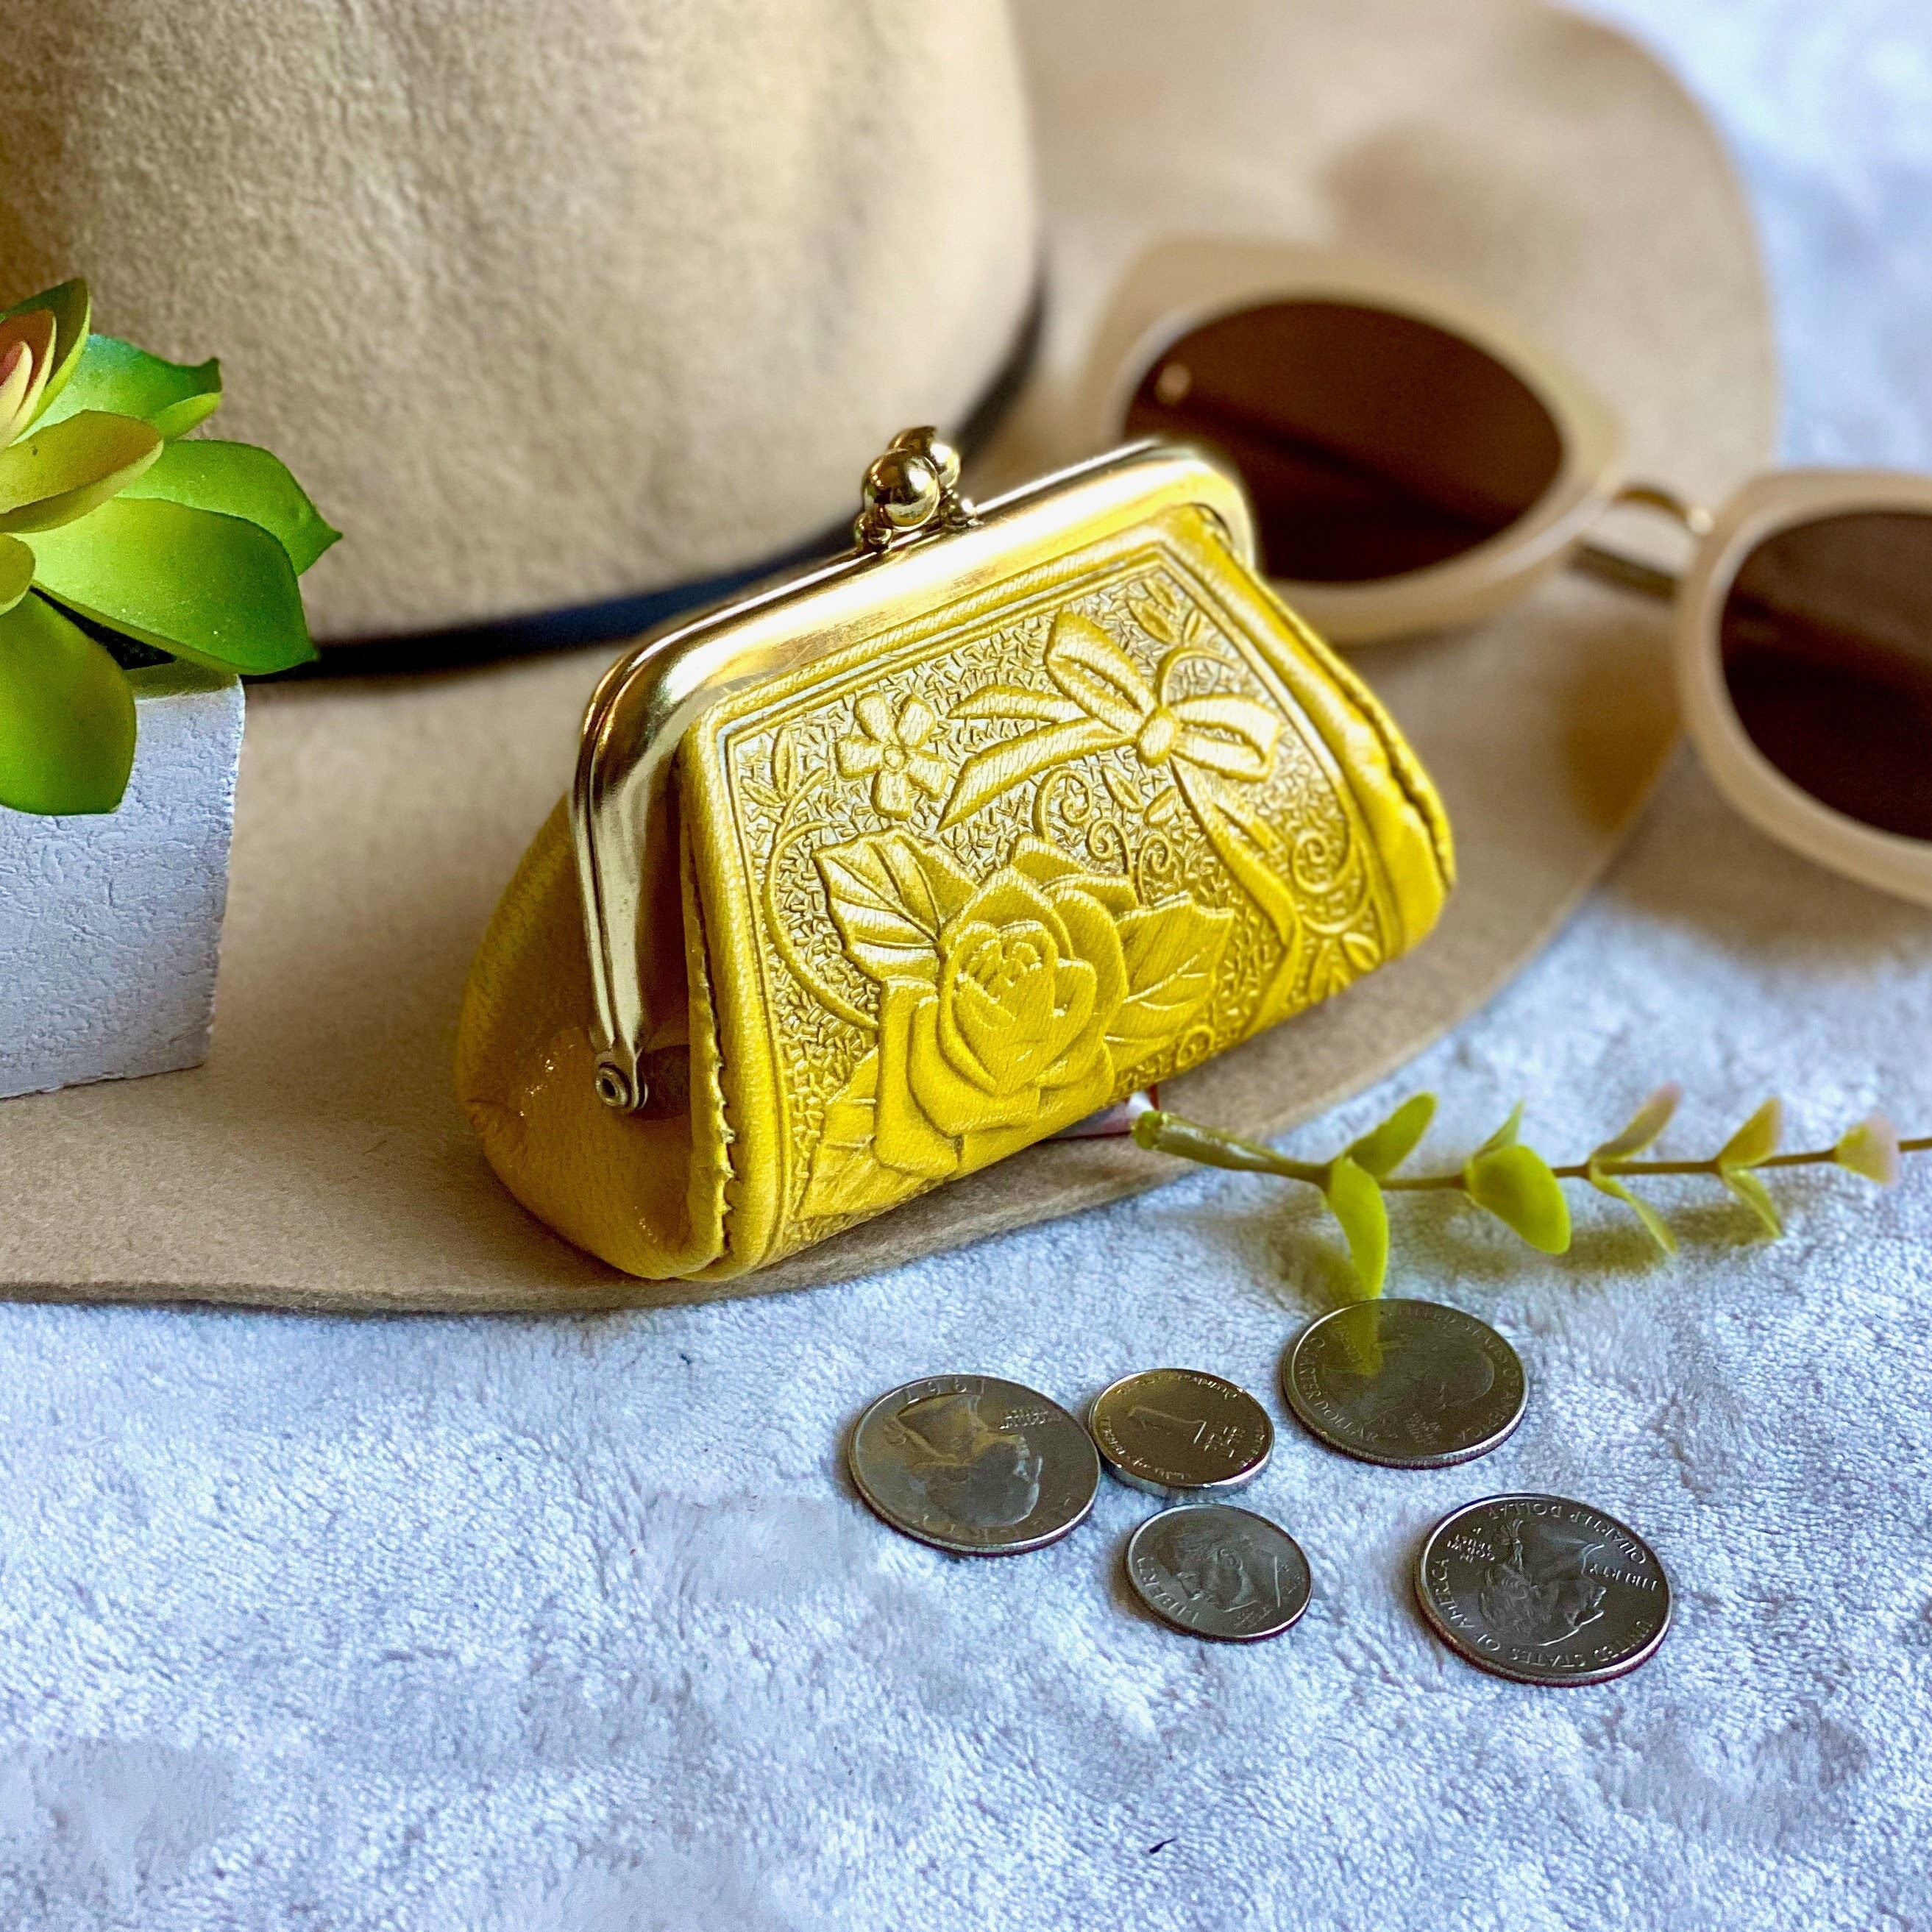 SHUJIN Women Wallets Small Leather Purse Women Ladies Card Bag For Women  2019 Female Purse Money Clip Wallet|Wallets|